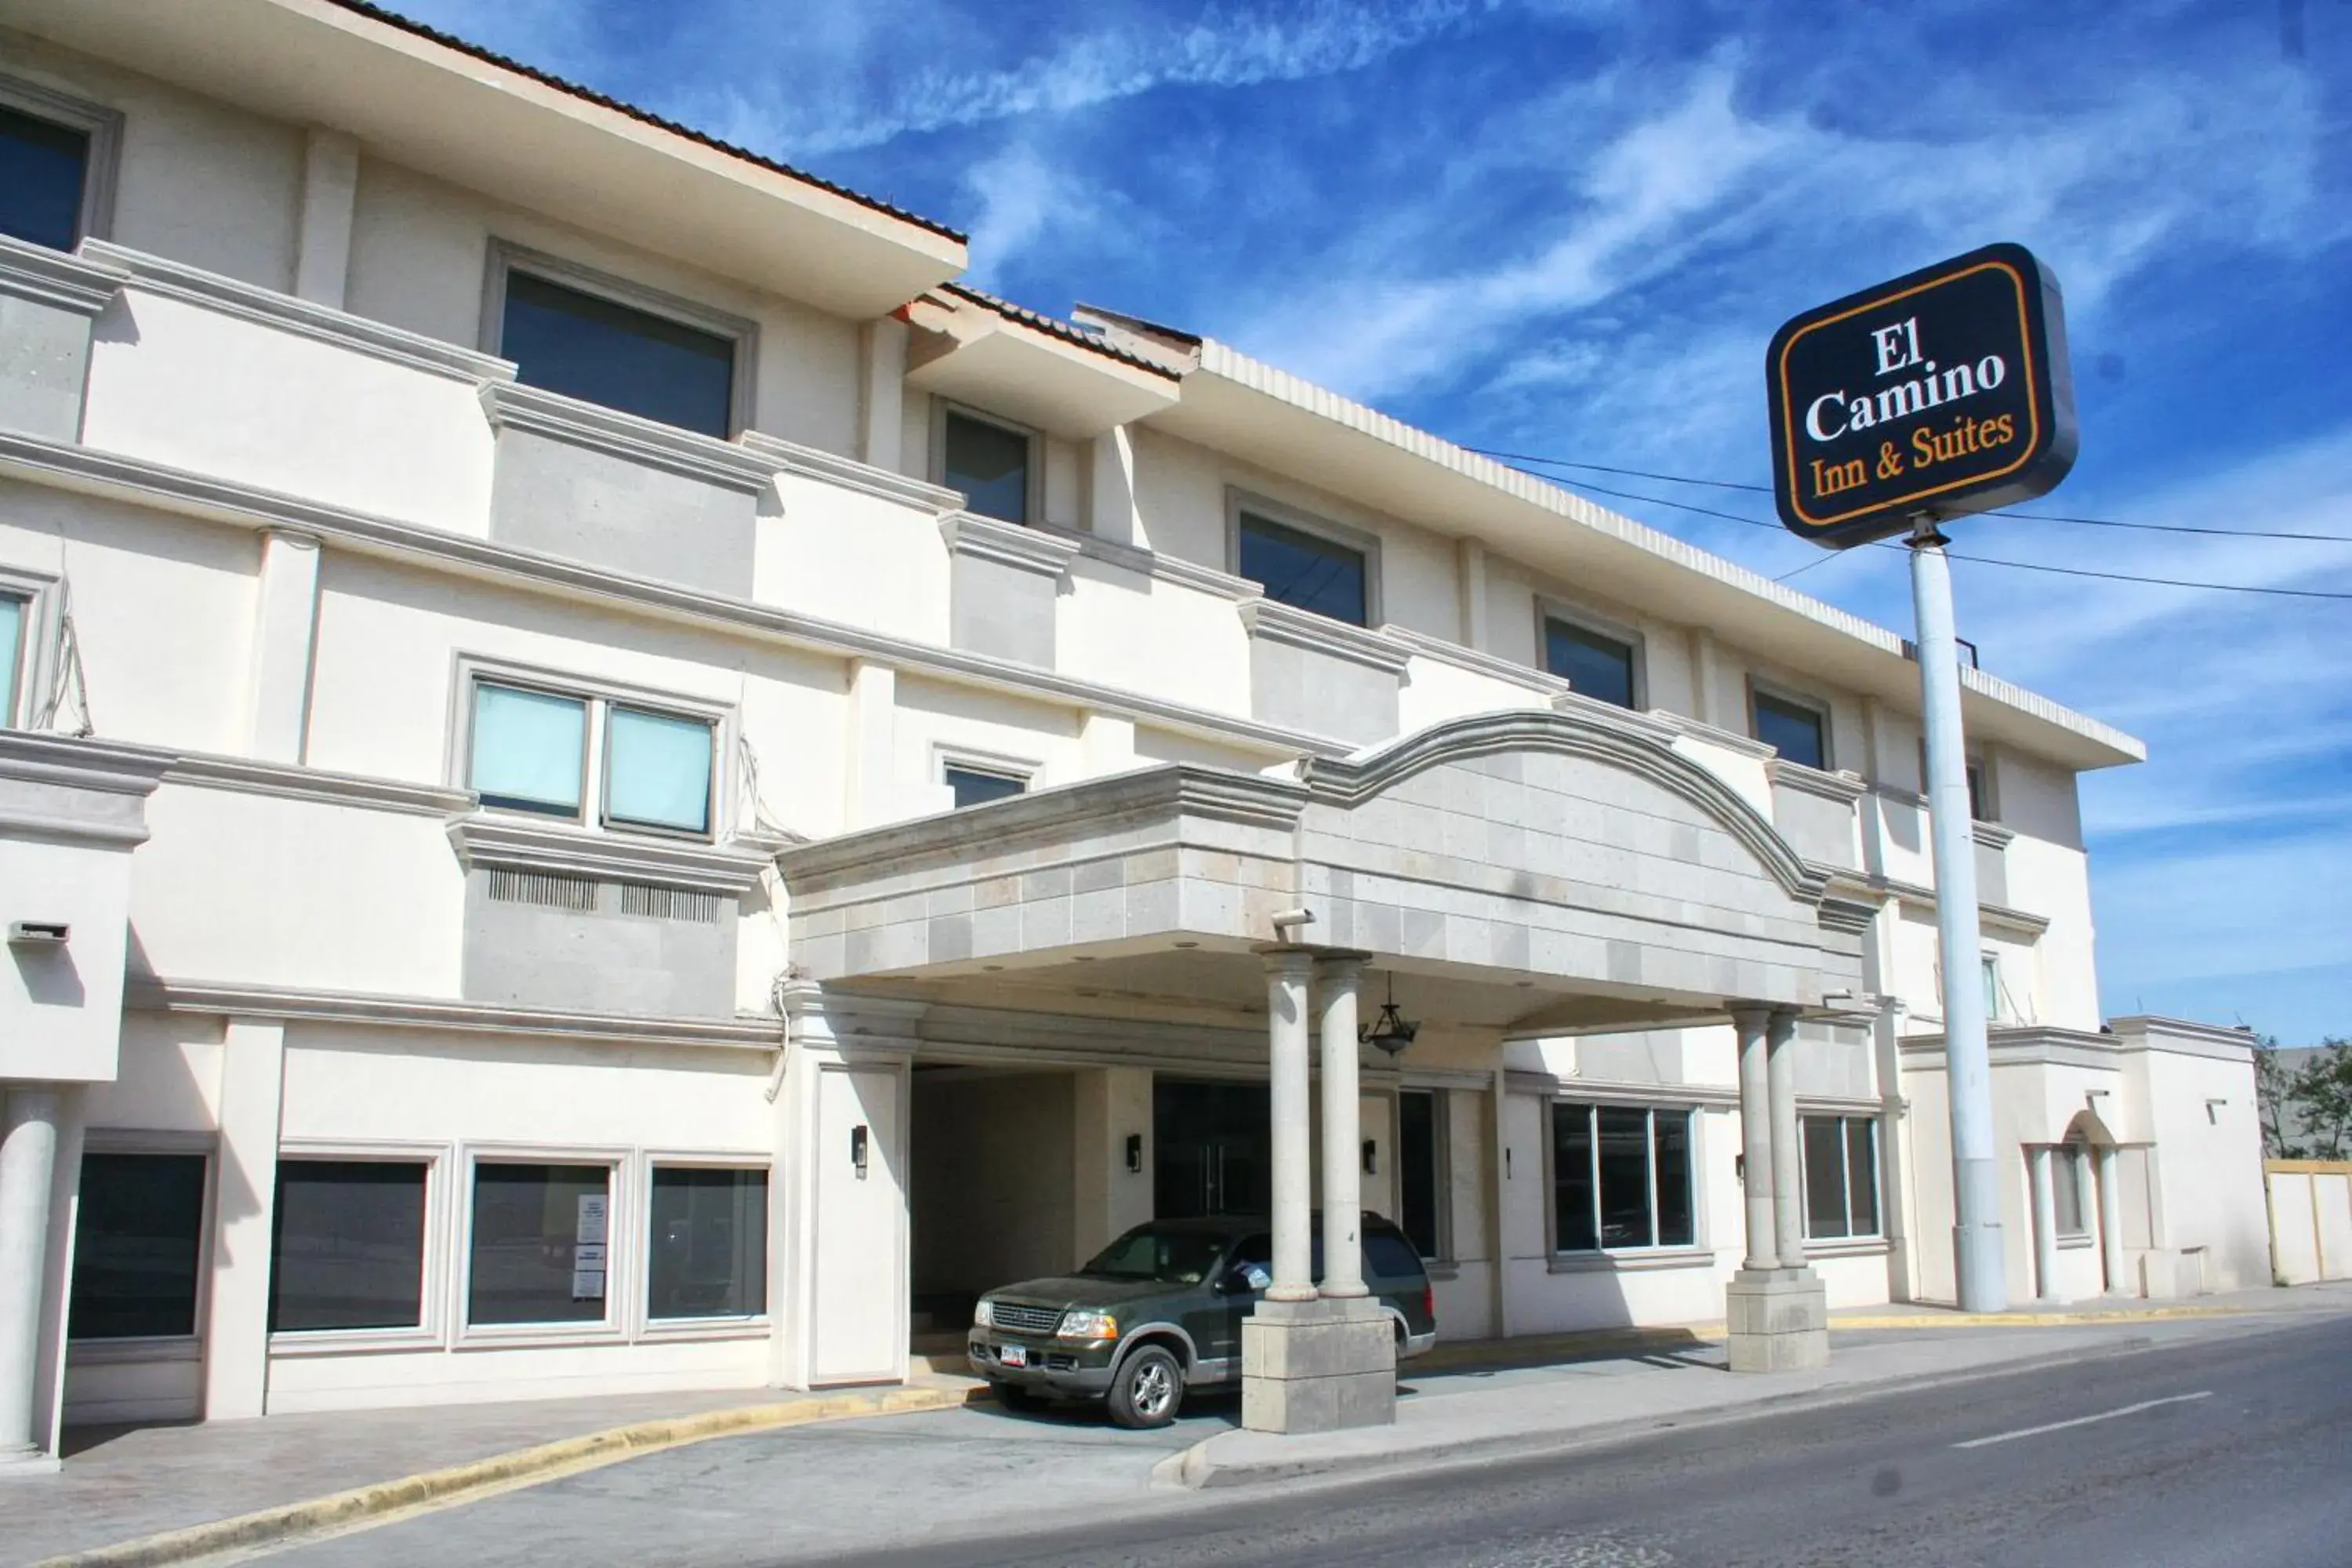 Facade/entrance in Hotel El Camino Inn & Suites